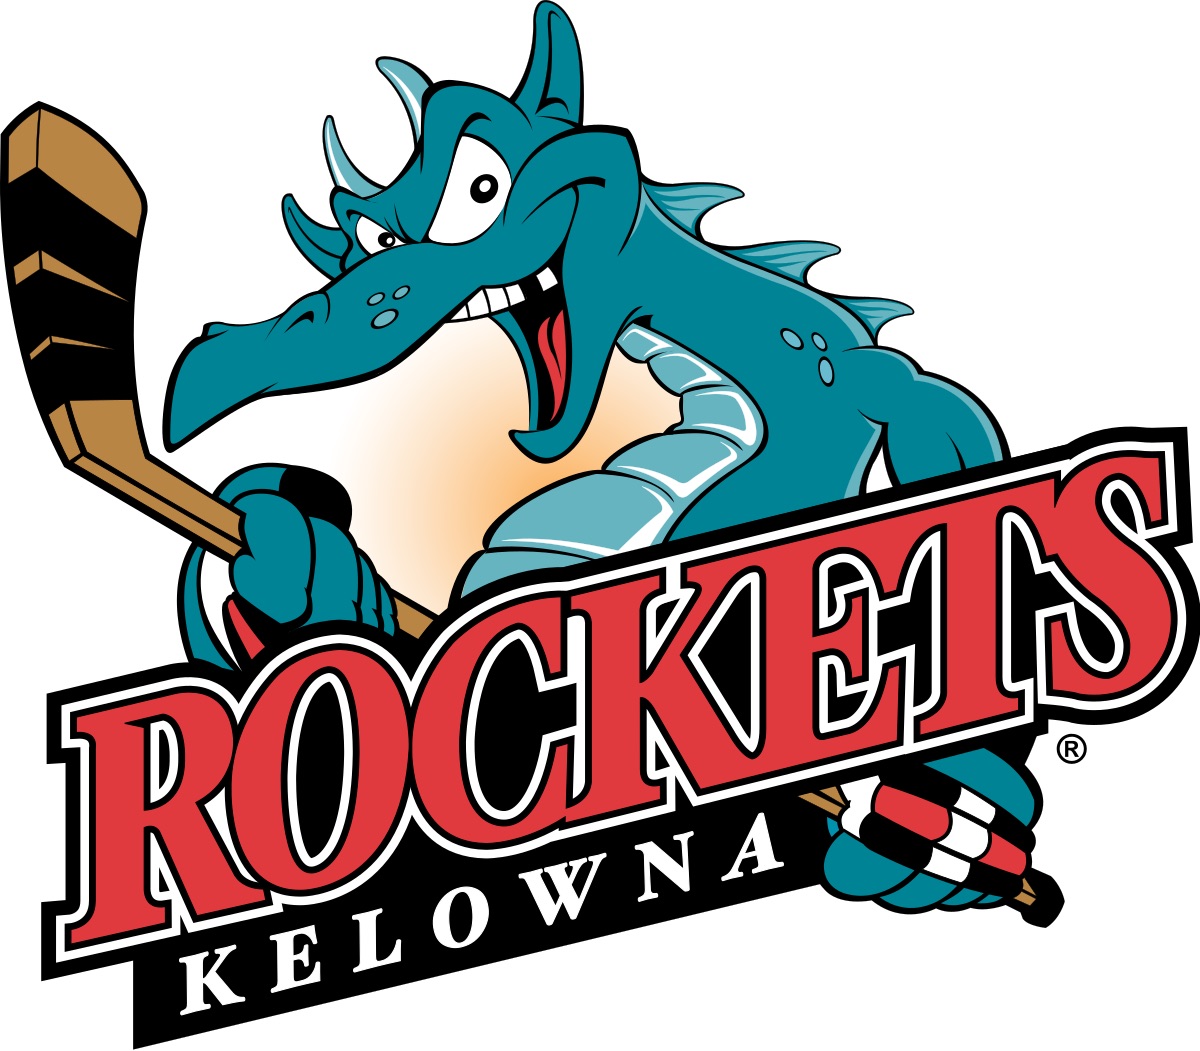 WHL: Kelowna Rockets Draft Prospects